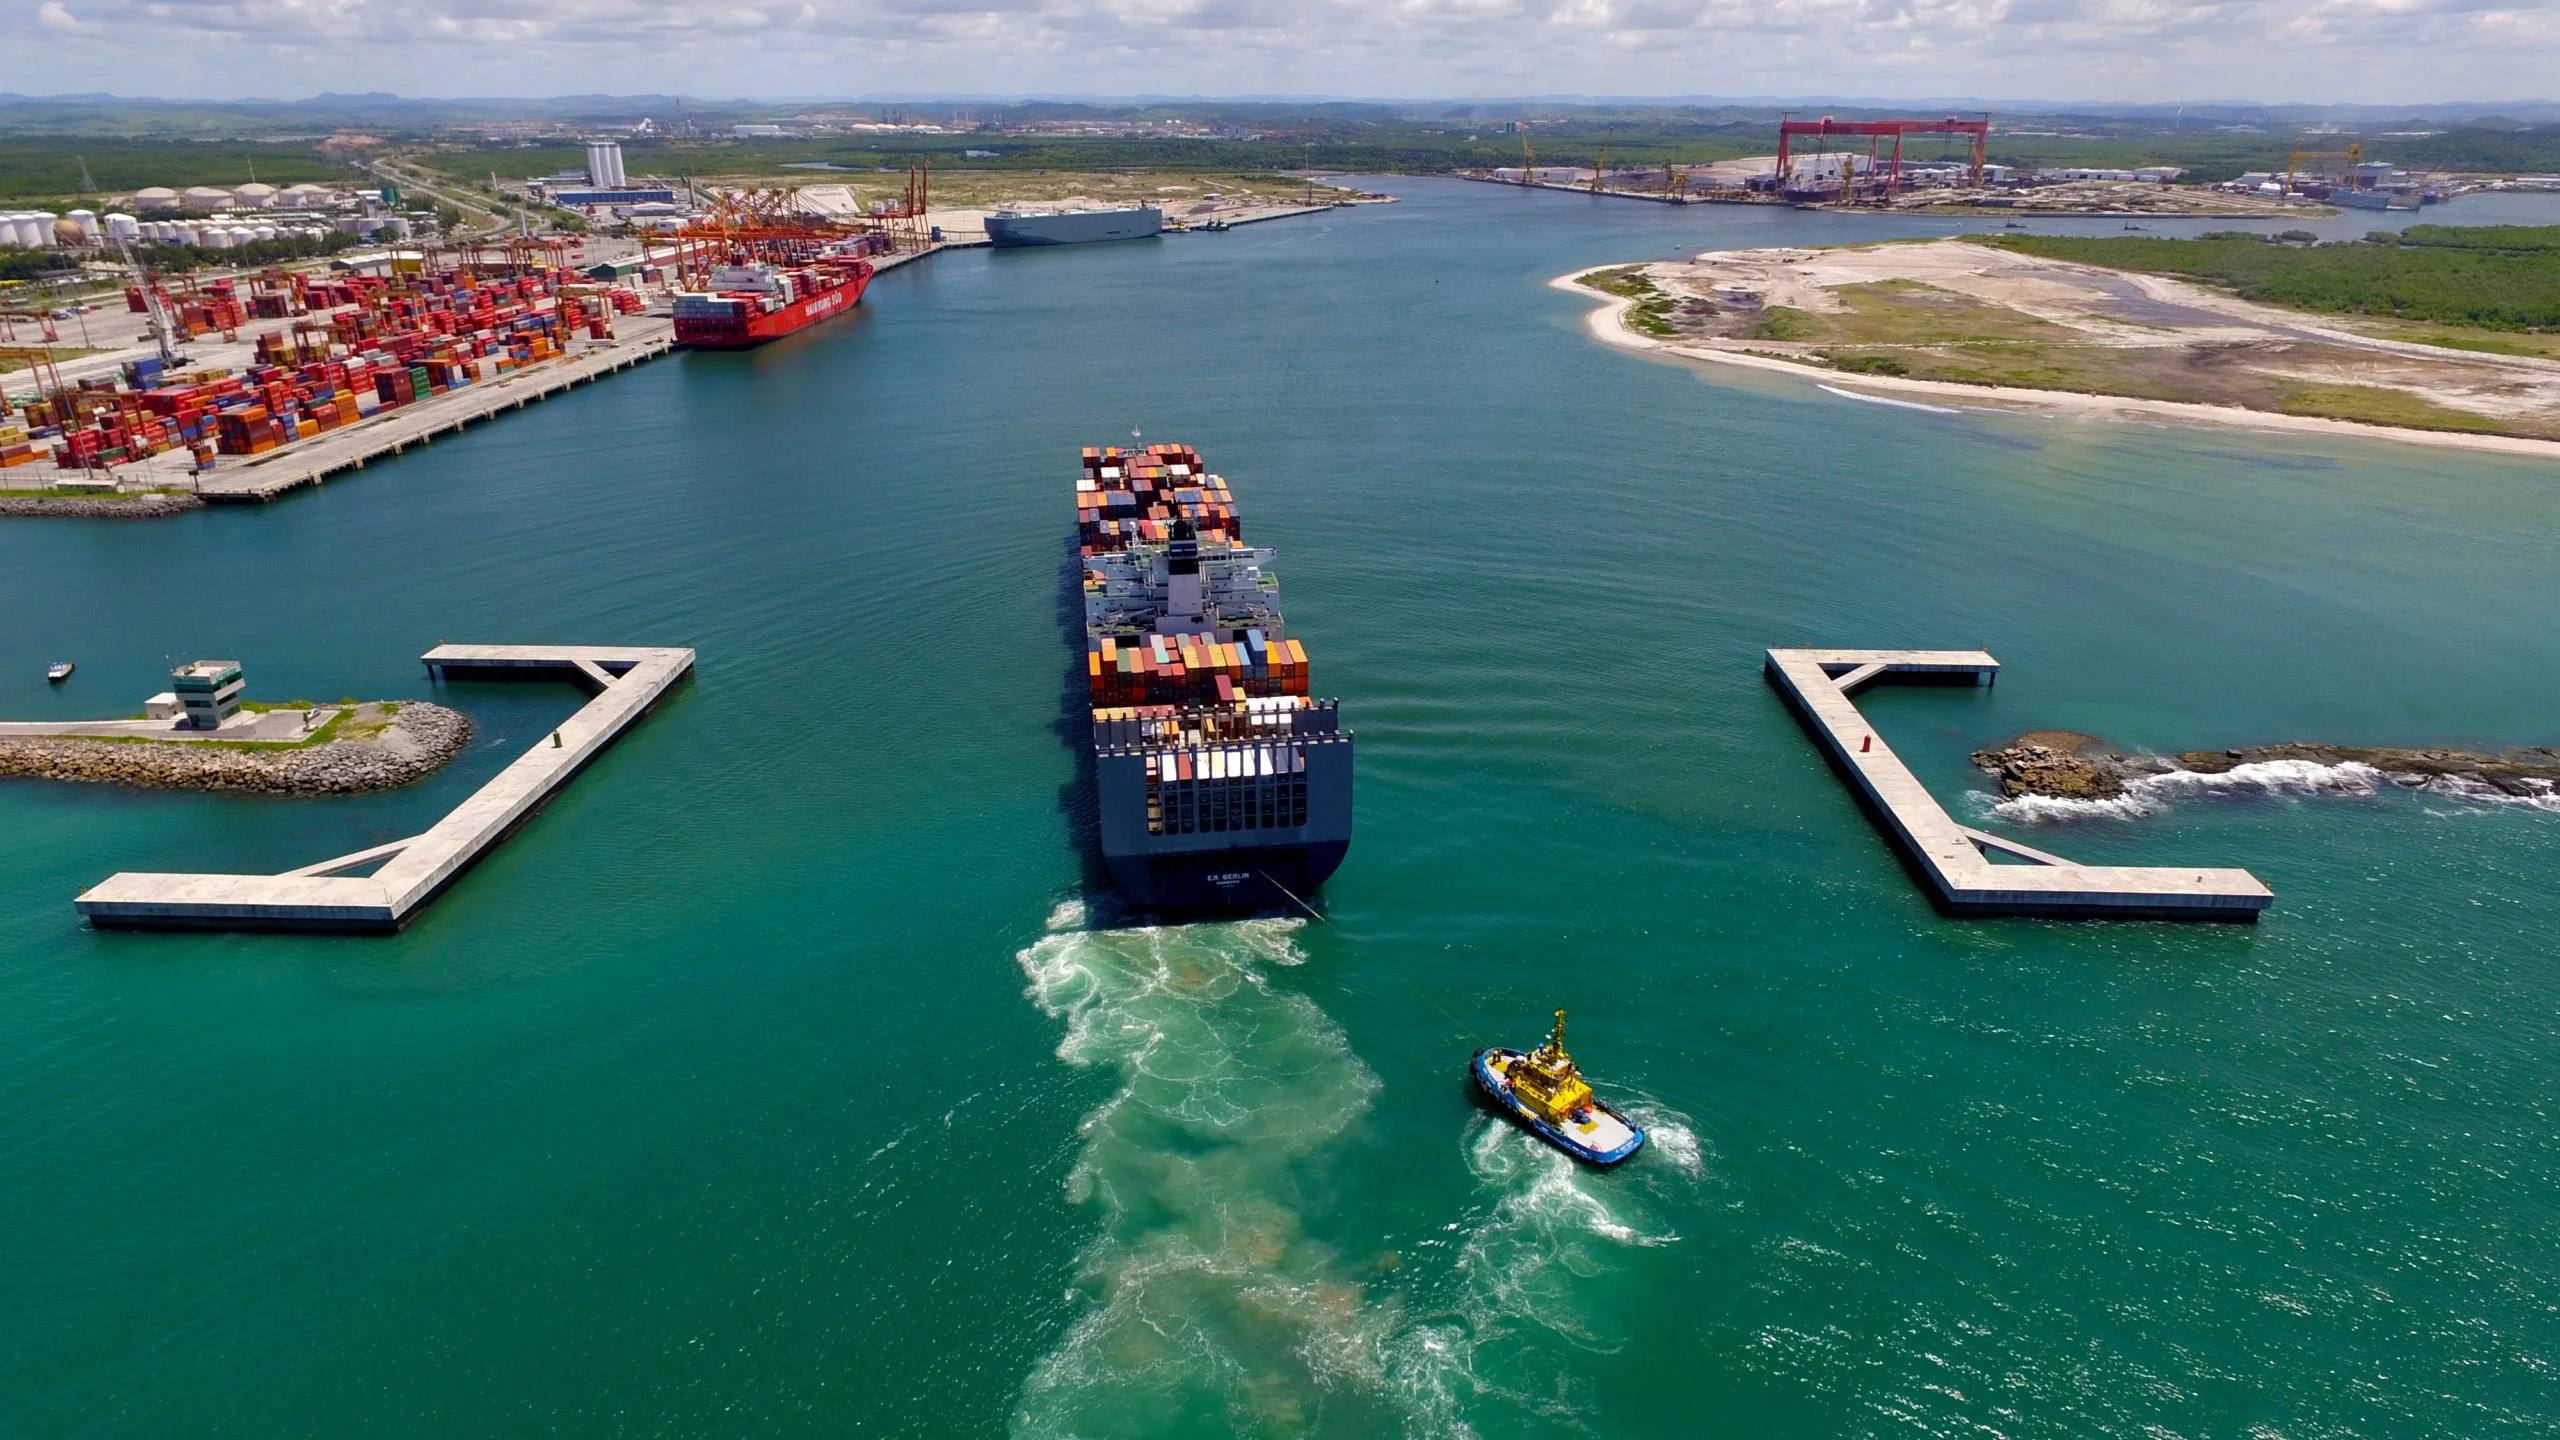 Suape aprova 1º projeto de hidrogênio verde da Qair no Brasil. Na imagem, navio cargueiro entrando no Porto de Suape, em Pernambuco (Foto: Divulgação)